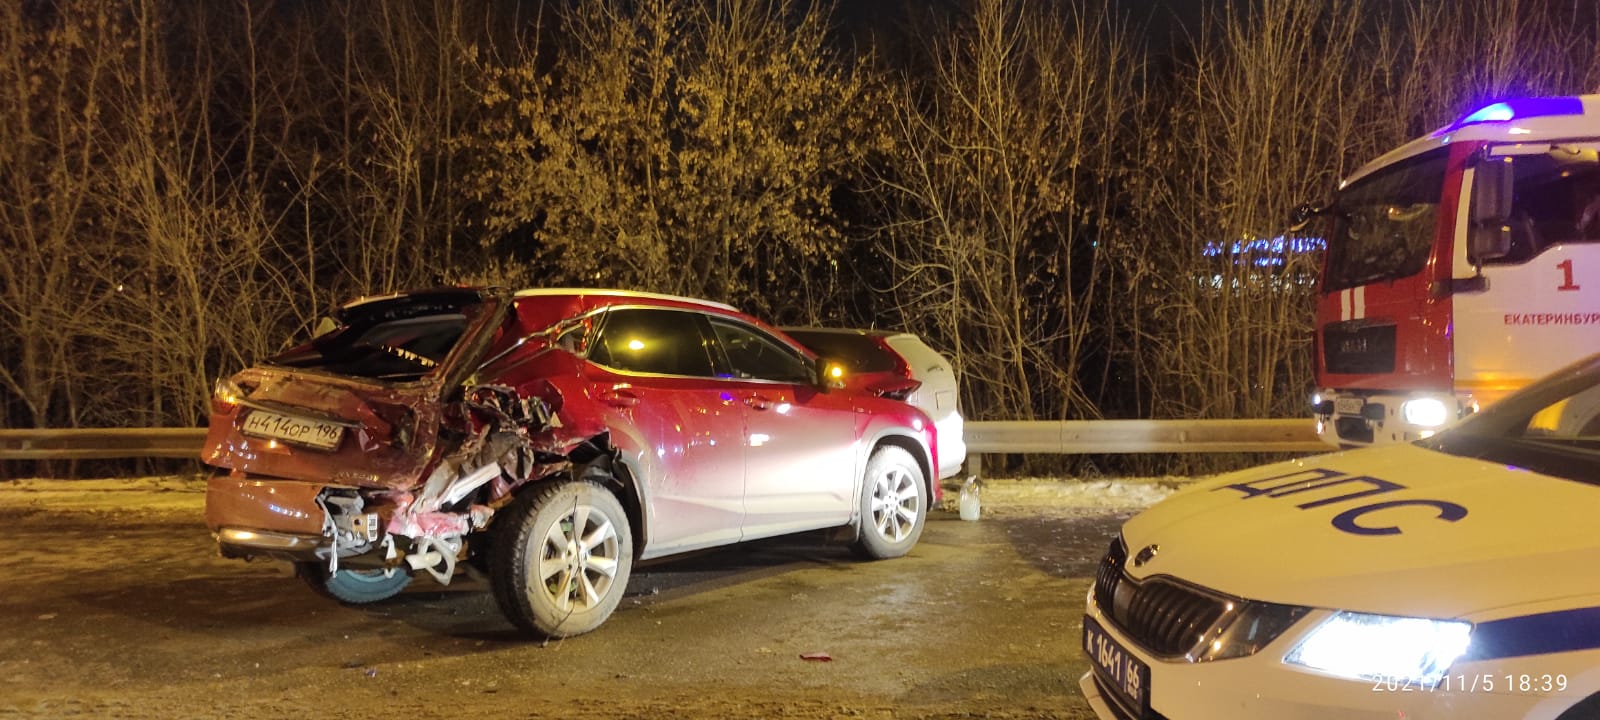 В Екатеринбурге у «КомсоМолла» произошла массовая авария